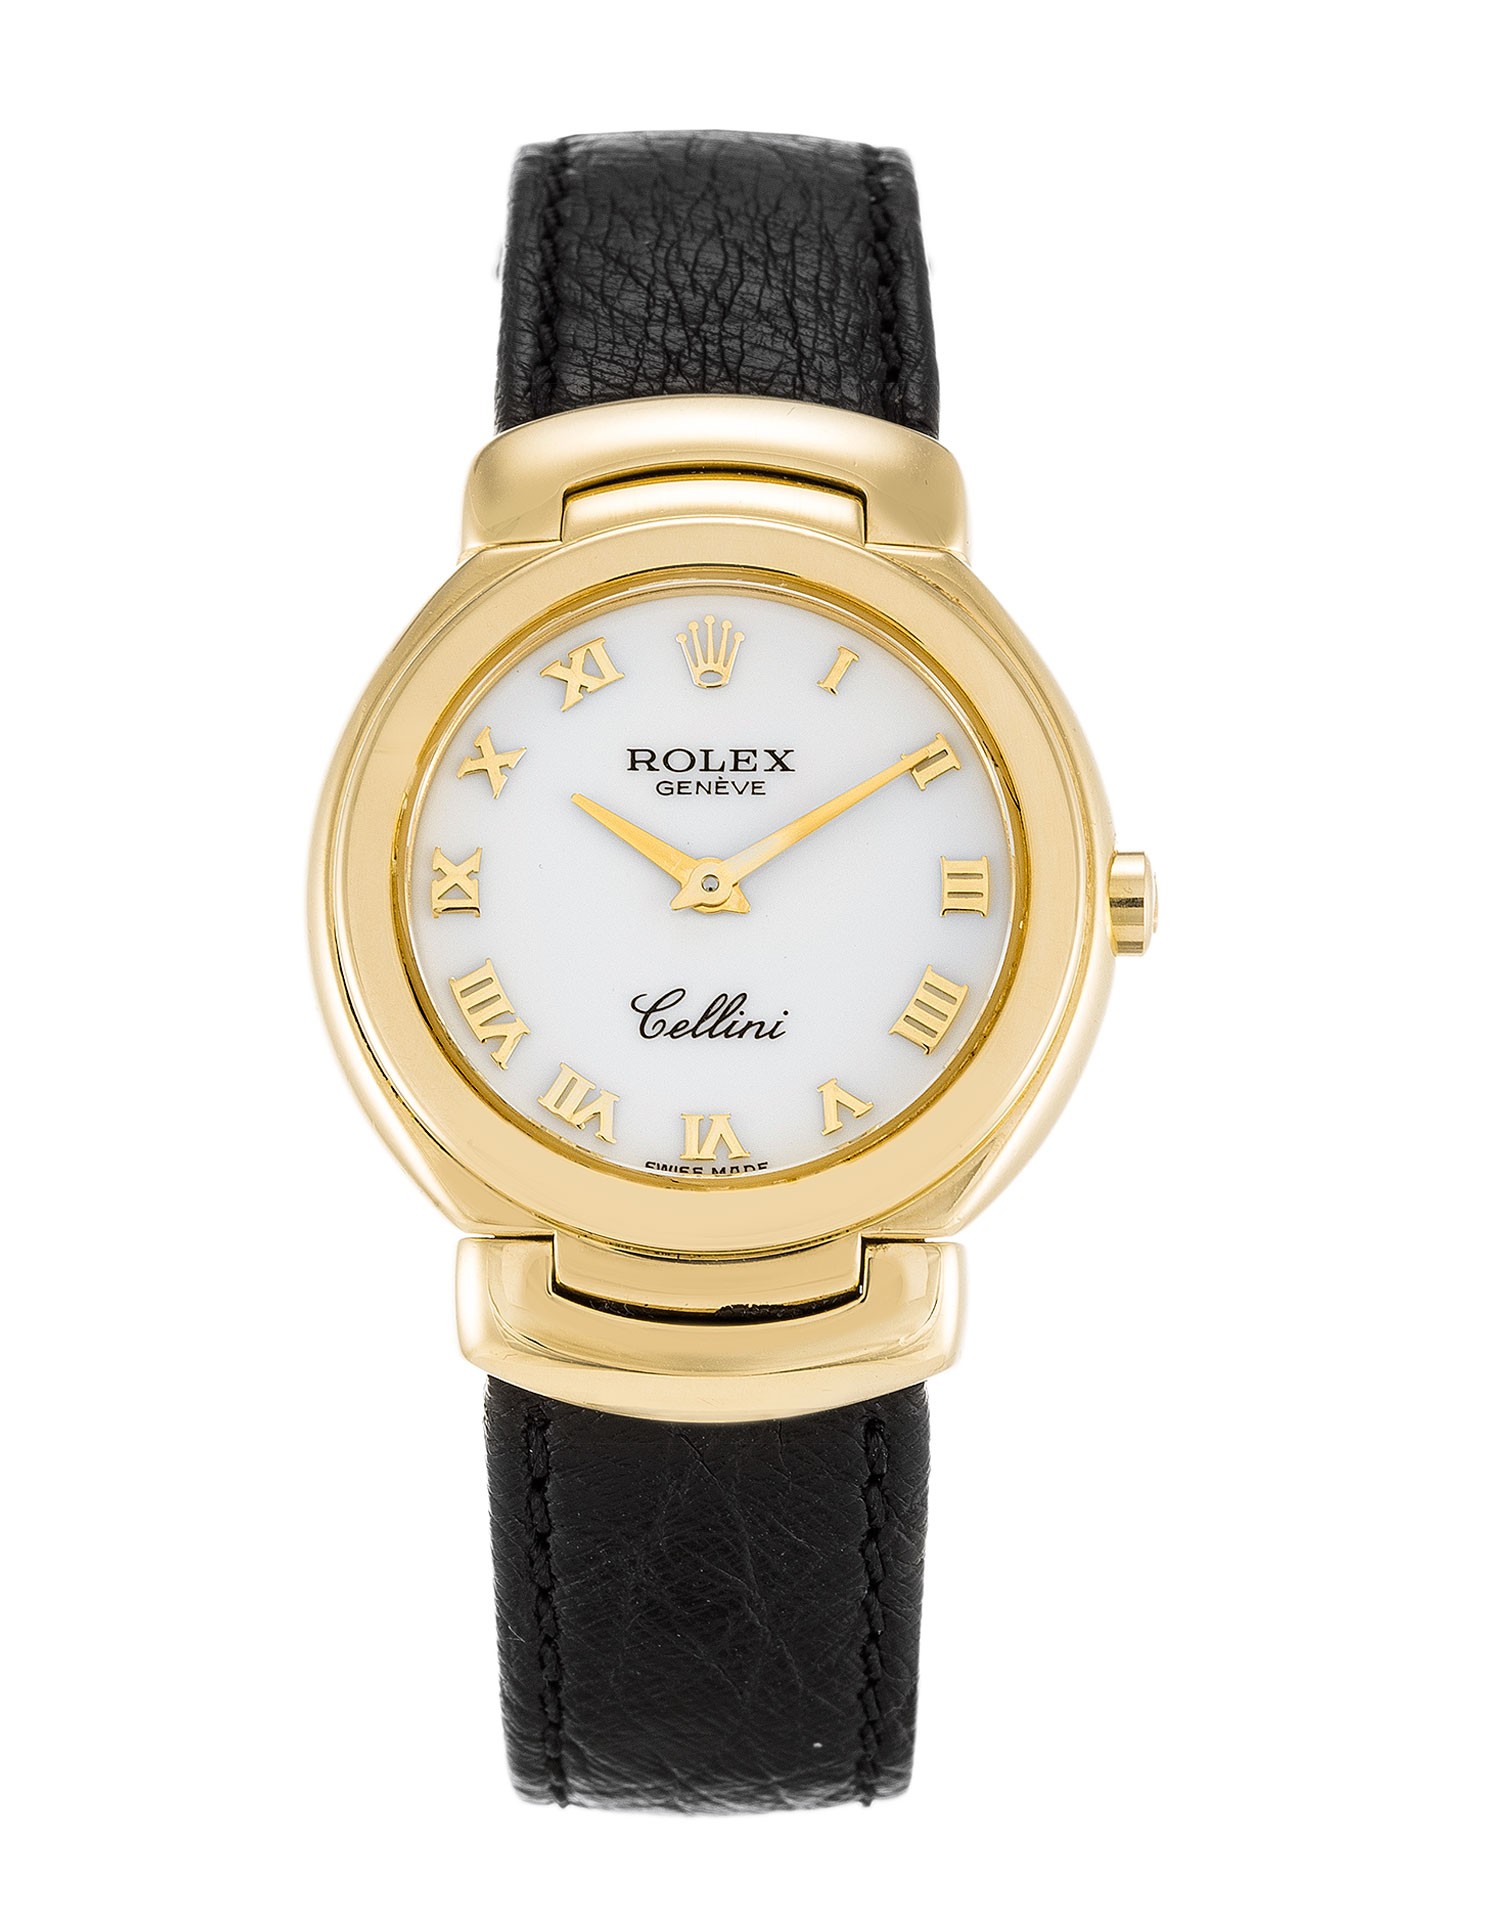 Rolex Replica Cellini 6621/8-26 MM